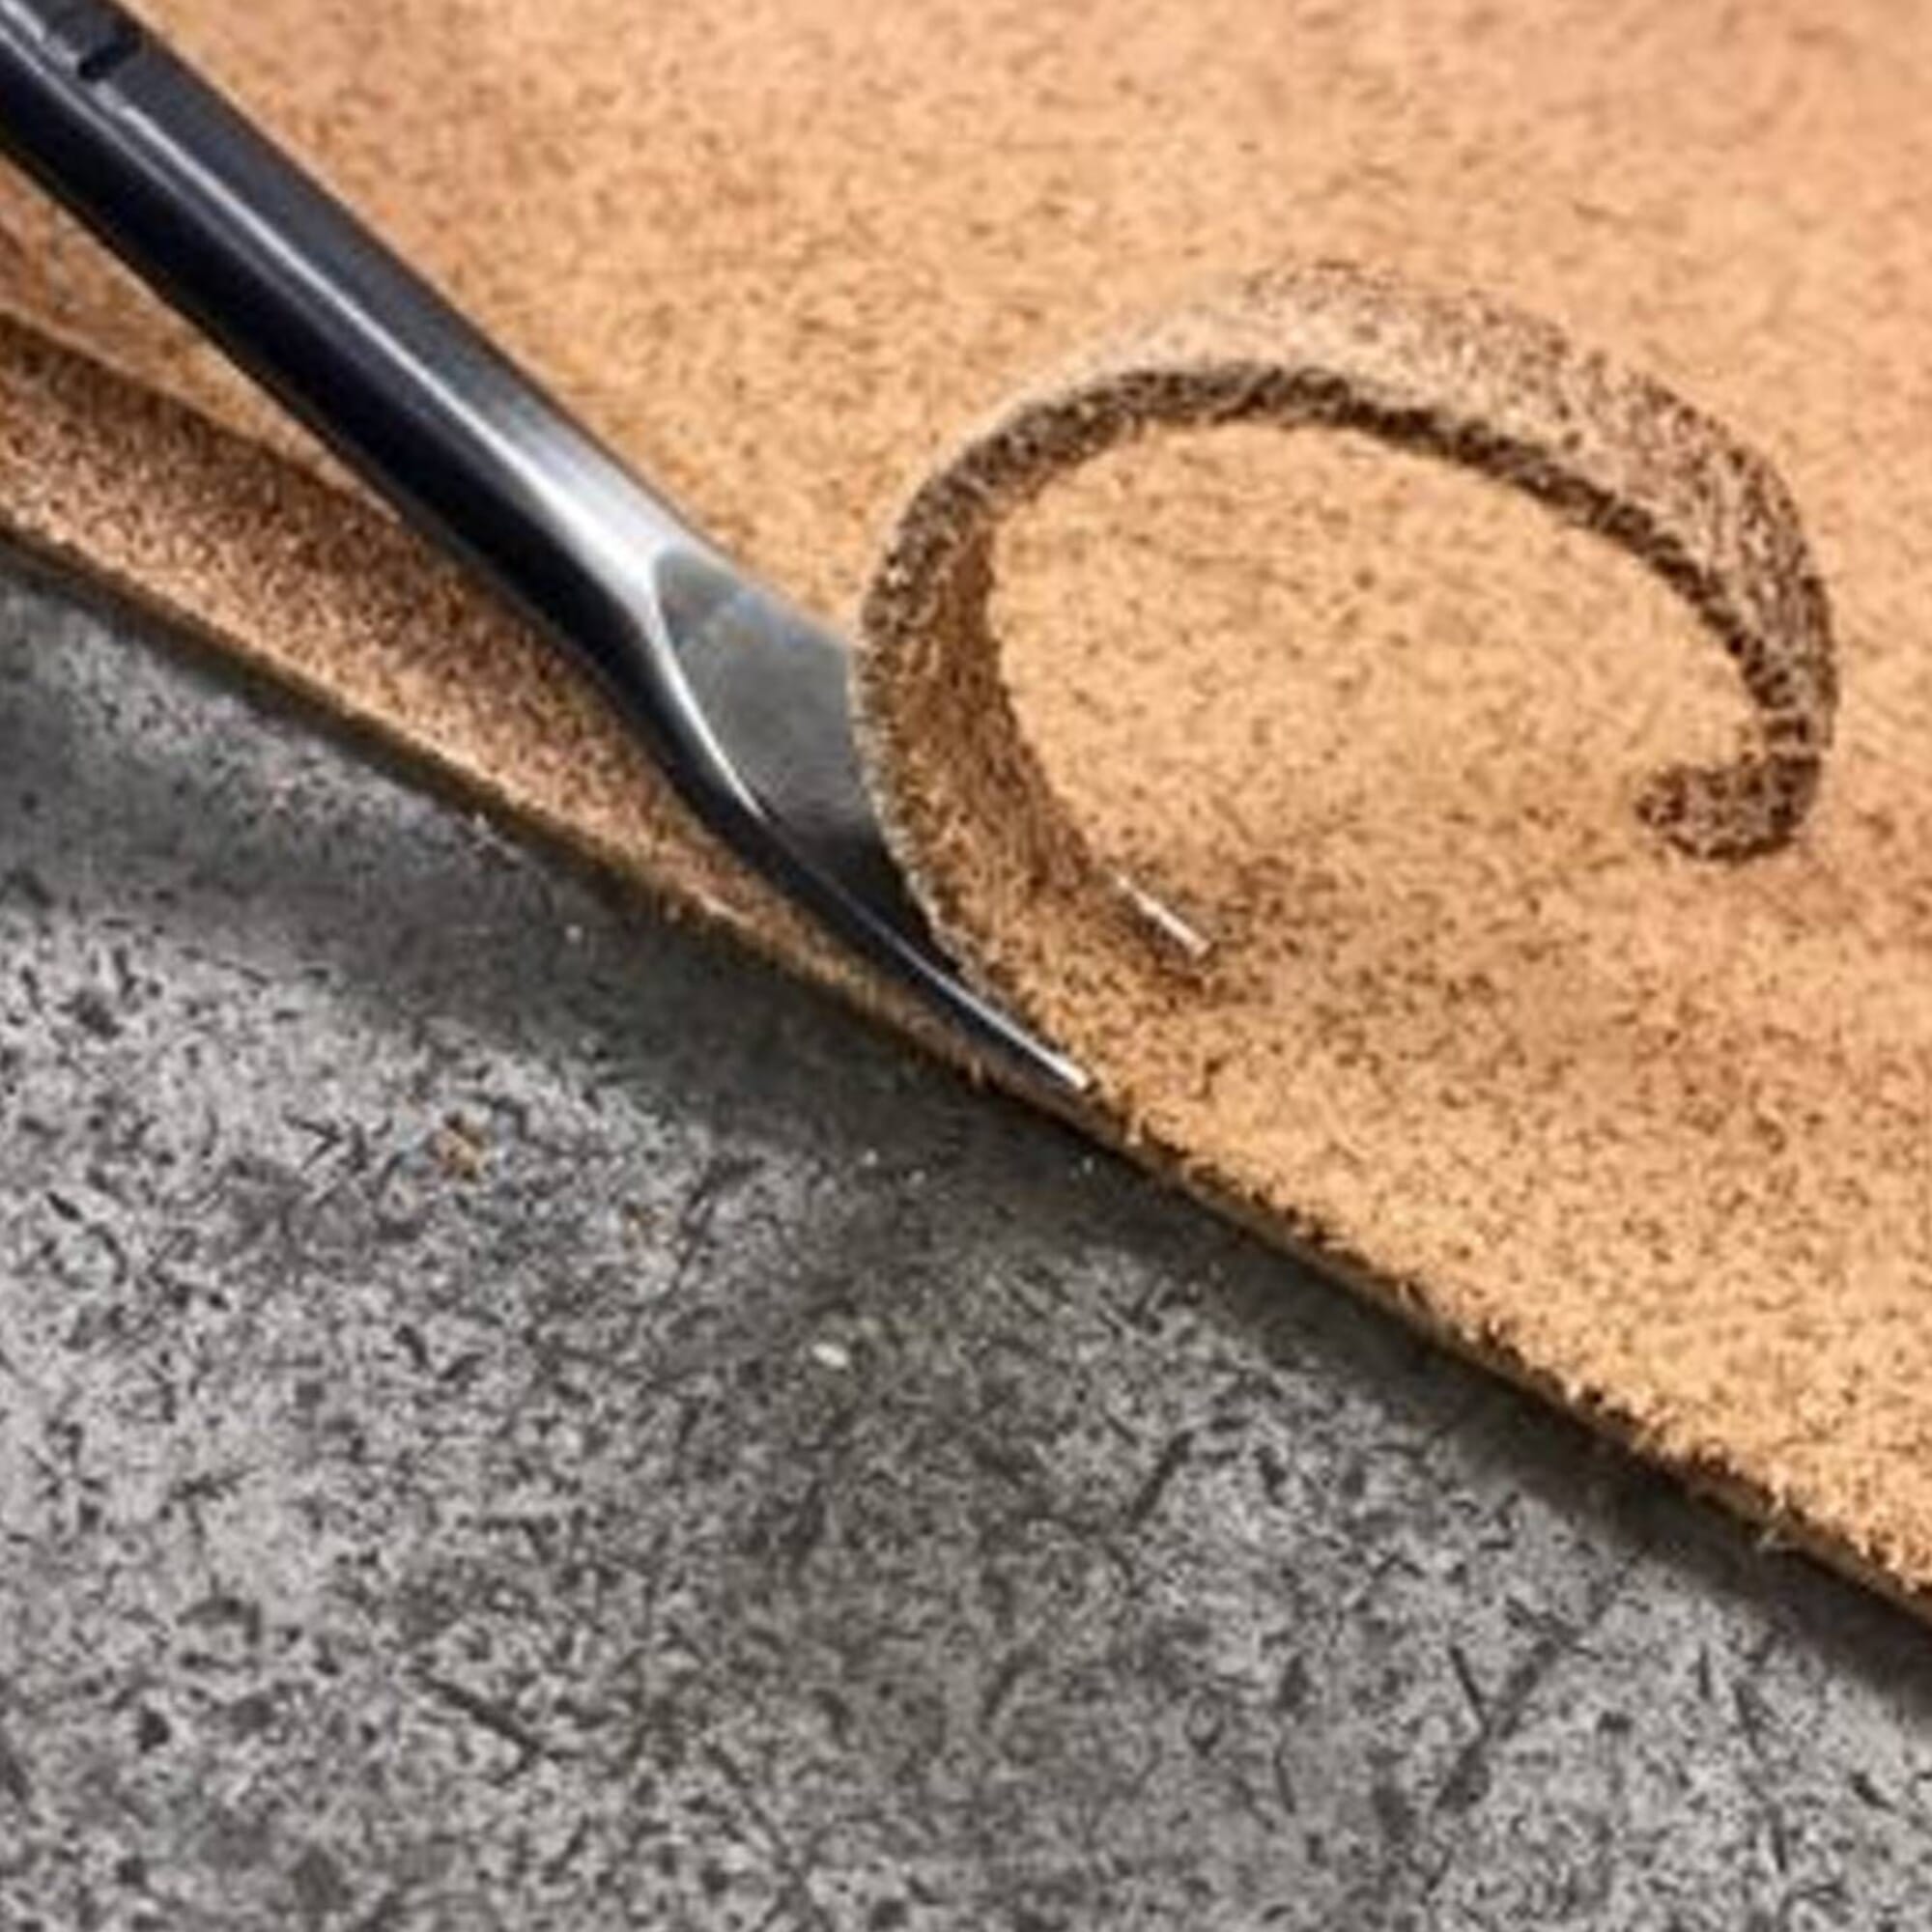 Craft Sha Leatherworking 100g Toko Pro Japanese Leather Finish Burnishing Gum, for Flesh Side & Edges of Leathercraft